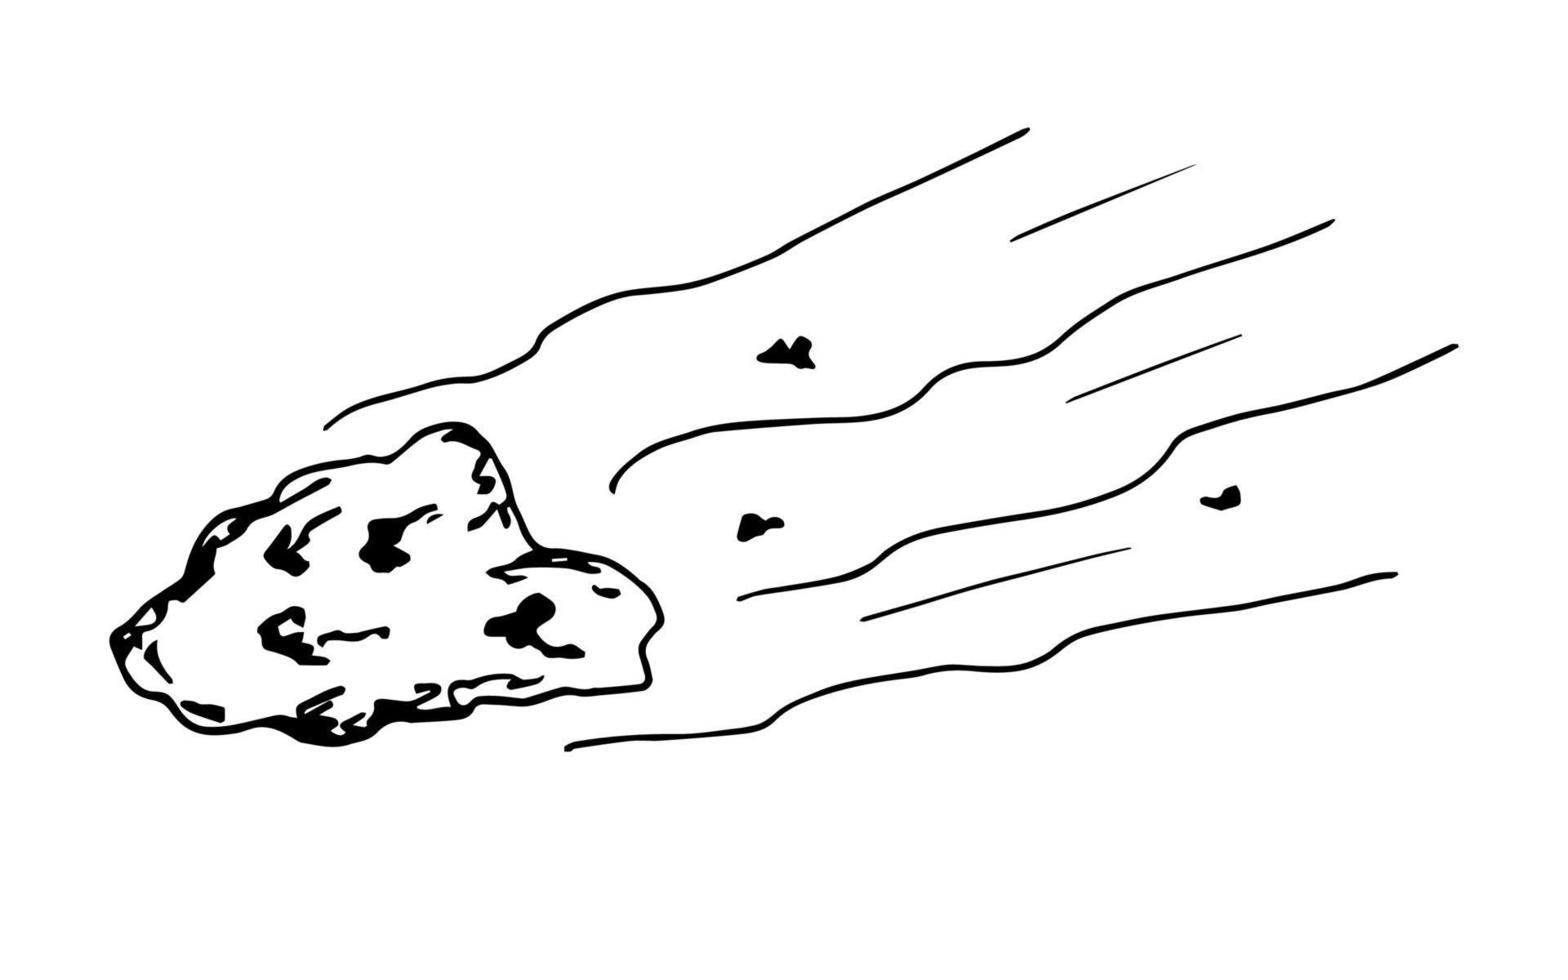 semplice schizzo vettoriale di inchiostro disegnato a mano. asteroide che vola a velocità, meteorite. fenomeno cosmico, pericolo, minaccia, pianeta.